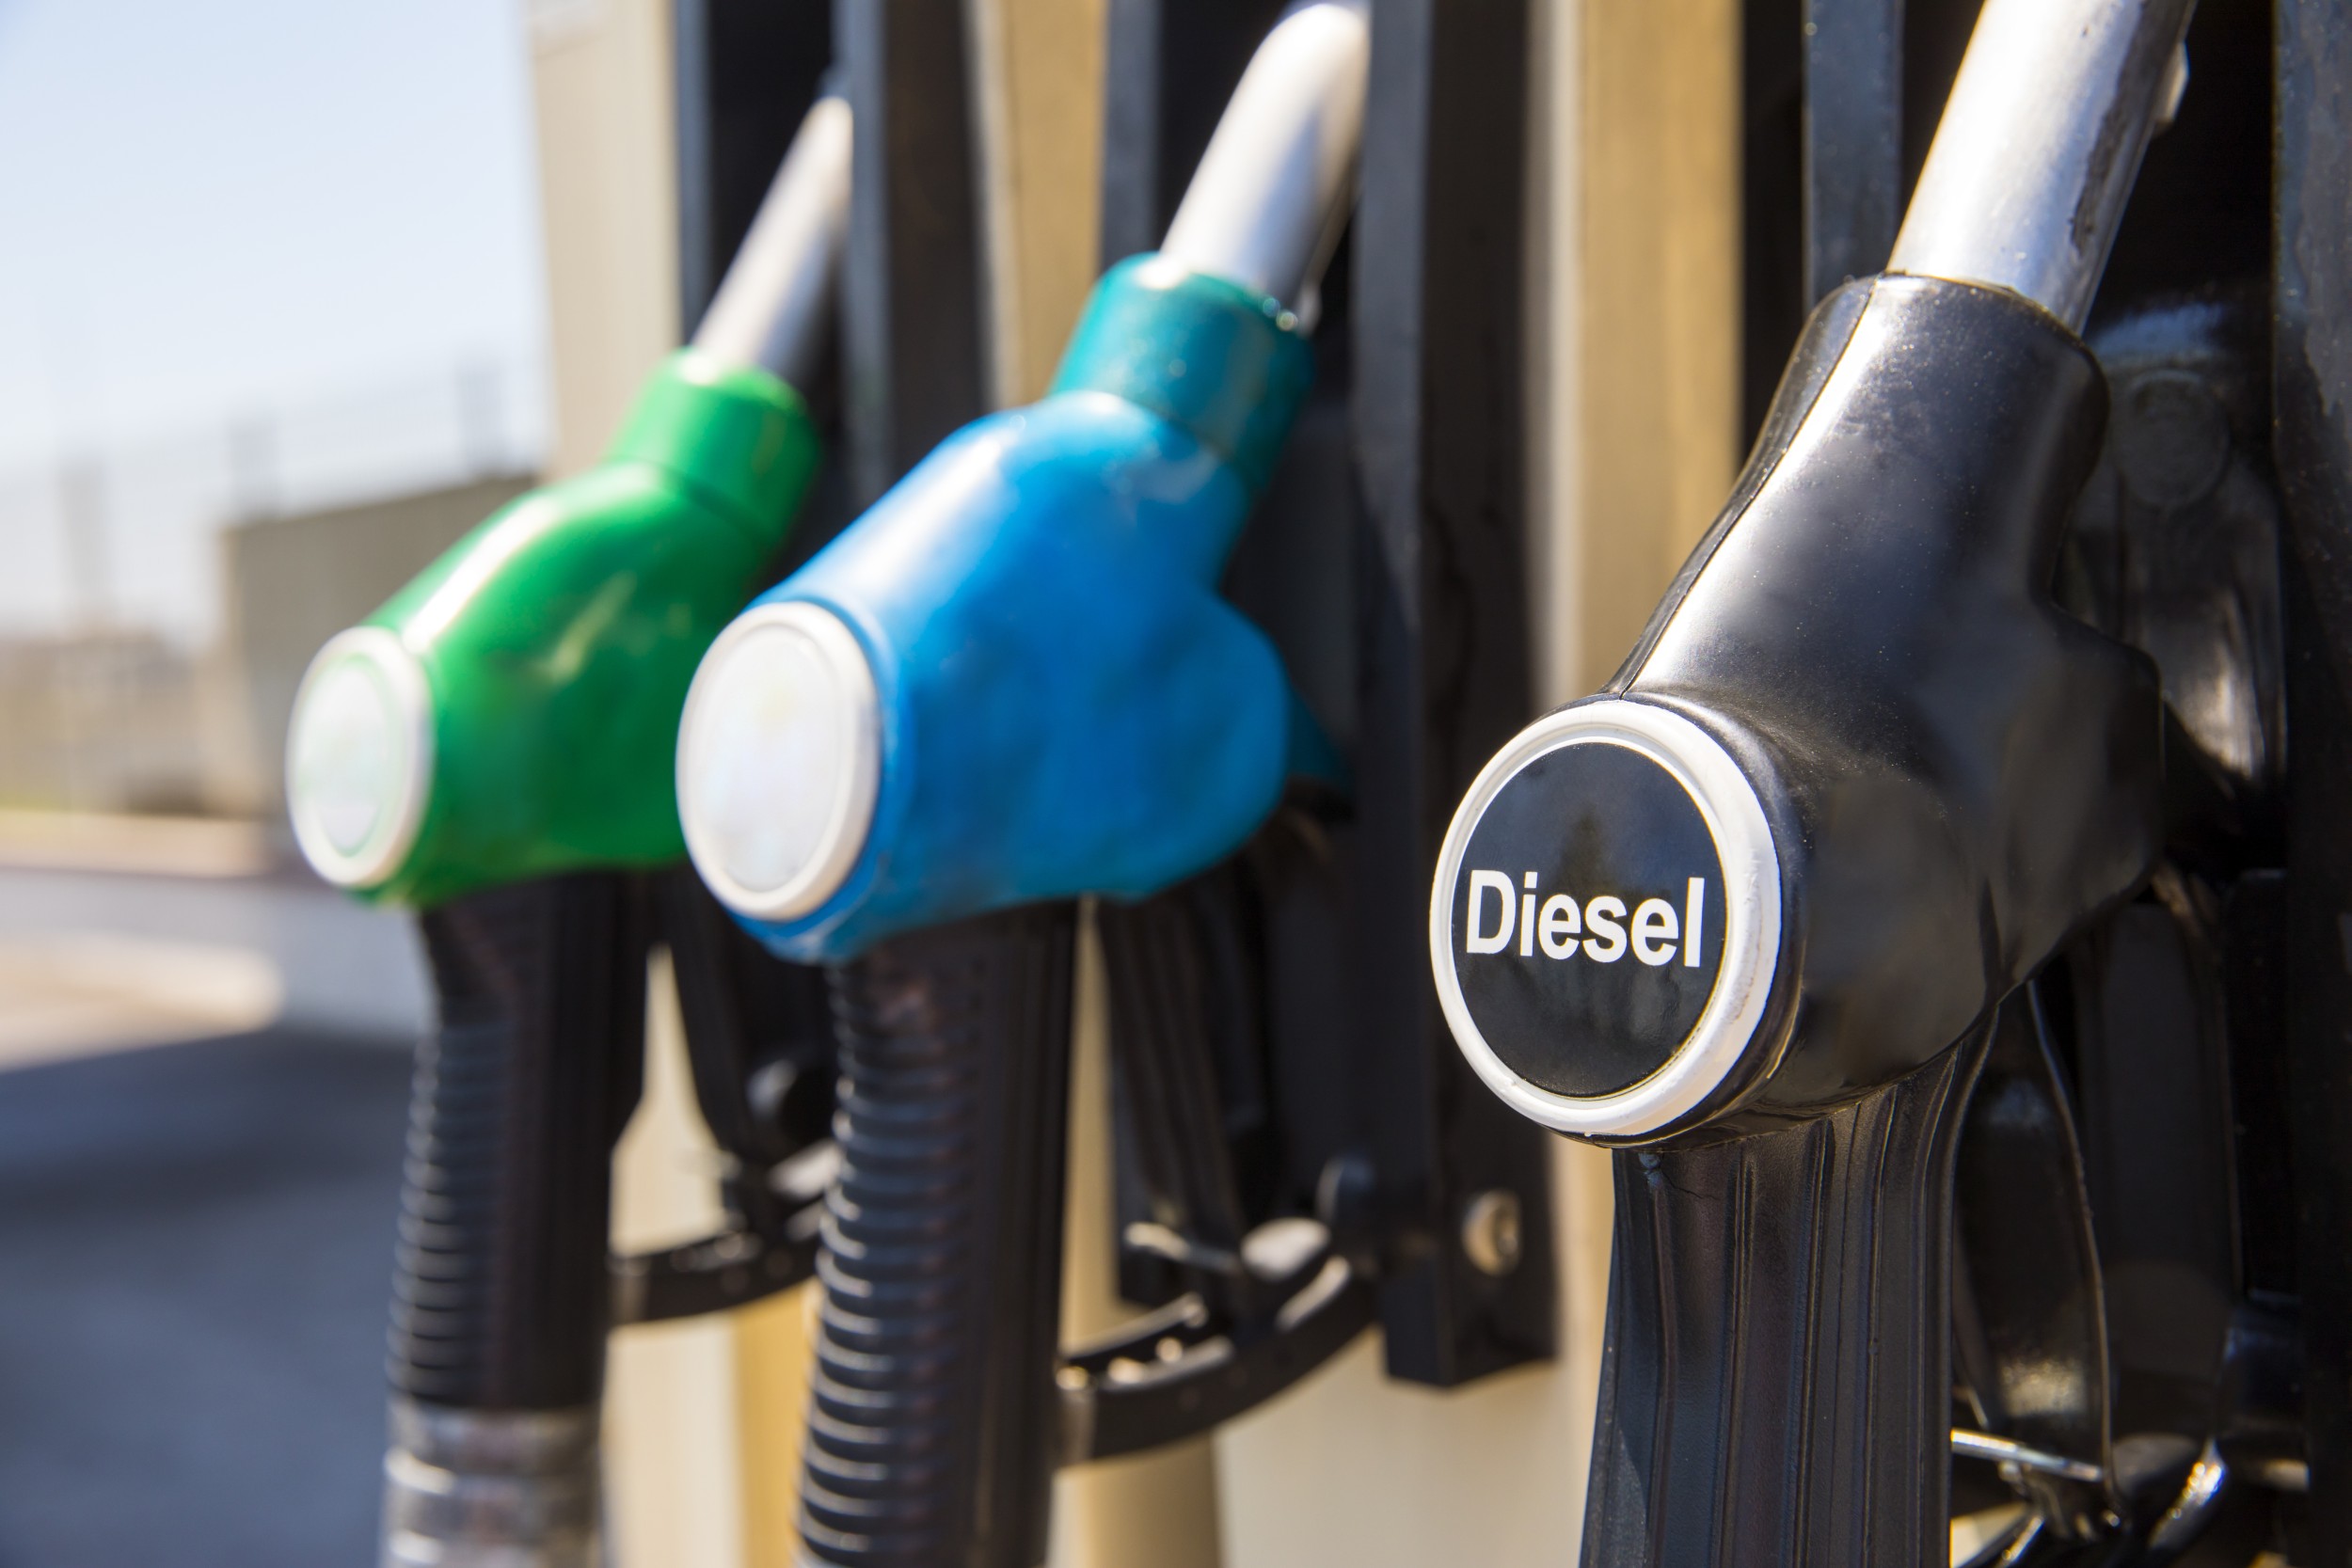 Produtores defendem rastreabilidade da cadeia de biodiesel para garantir qualidade. Na imagem: Bomba de abastecimento de óleo diesel, na cor preta; ao lado de outras nas cores azul e verde